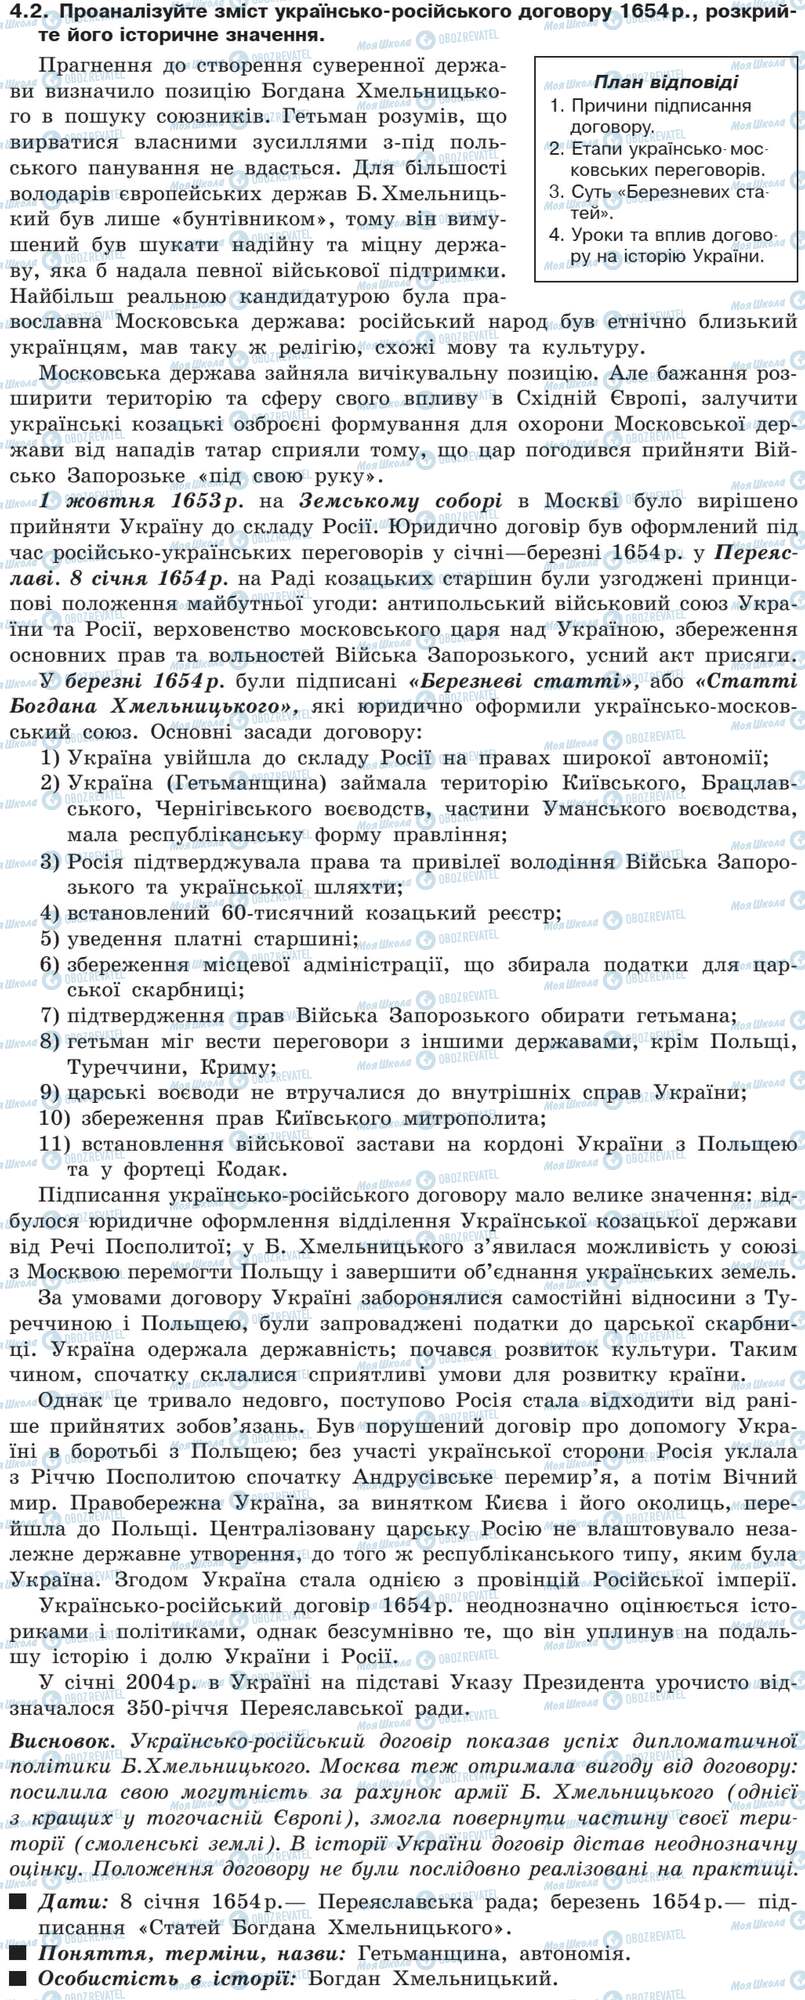 ДПА История Украины 9 класс страница 4.2